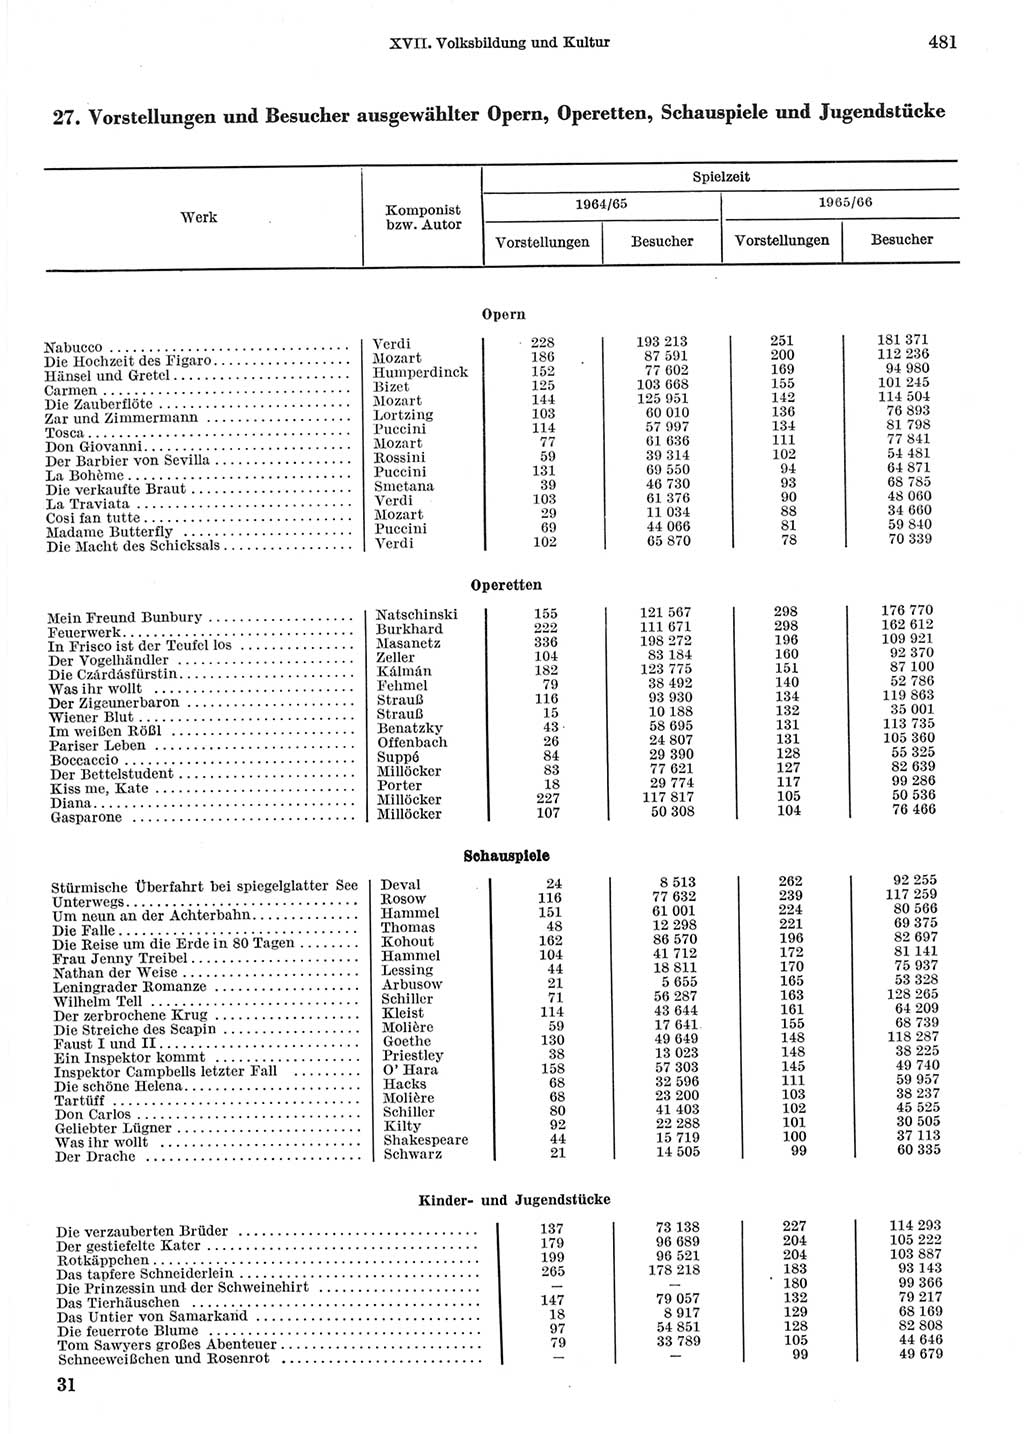 Statistisches Jahrbuch der Deutschen Demokratischen Republik (DDR) 1967, Seite 481 (Stat. Jb. DDR 1967, S. 481)